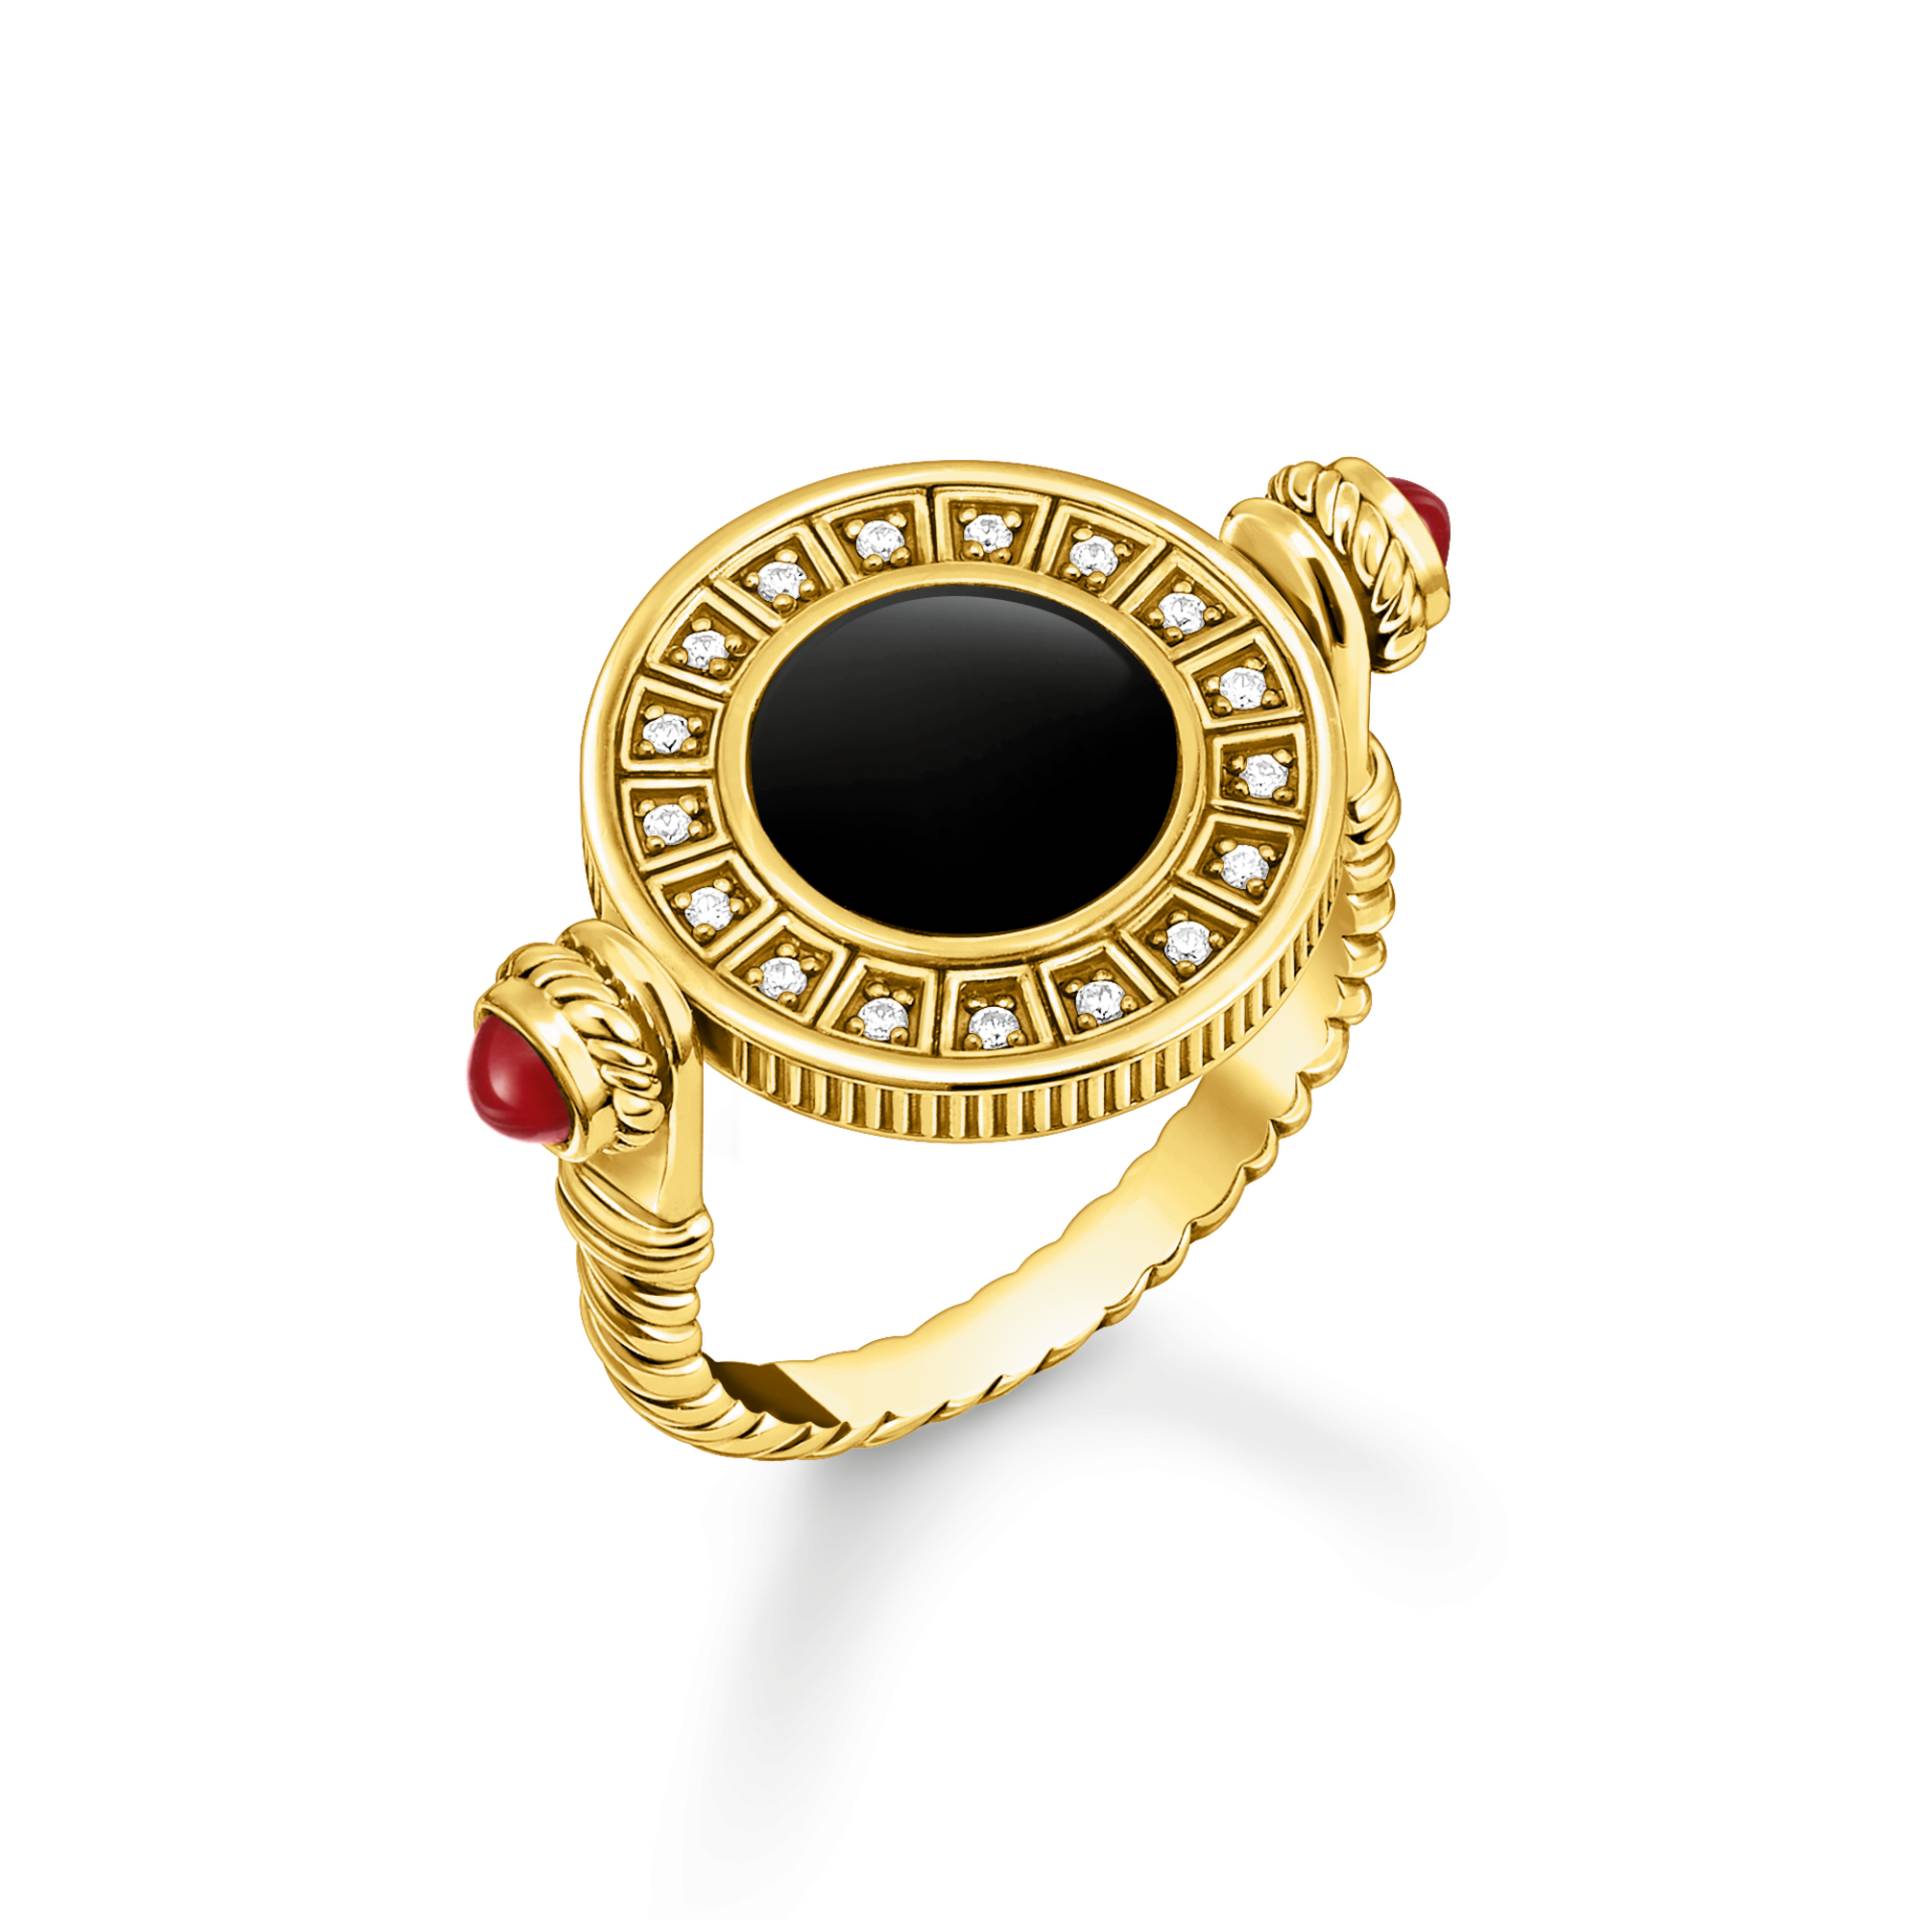 Thomas Sabo Ring drehbar mit schwarzem Onyx und weißen Steinen vergoldet mehrfarbig TR2427-522-7-50 von Thomas Sabo